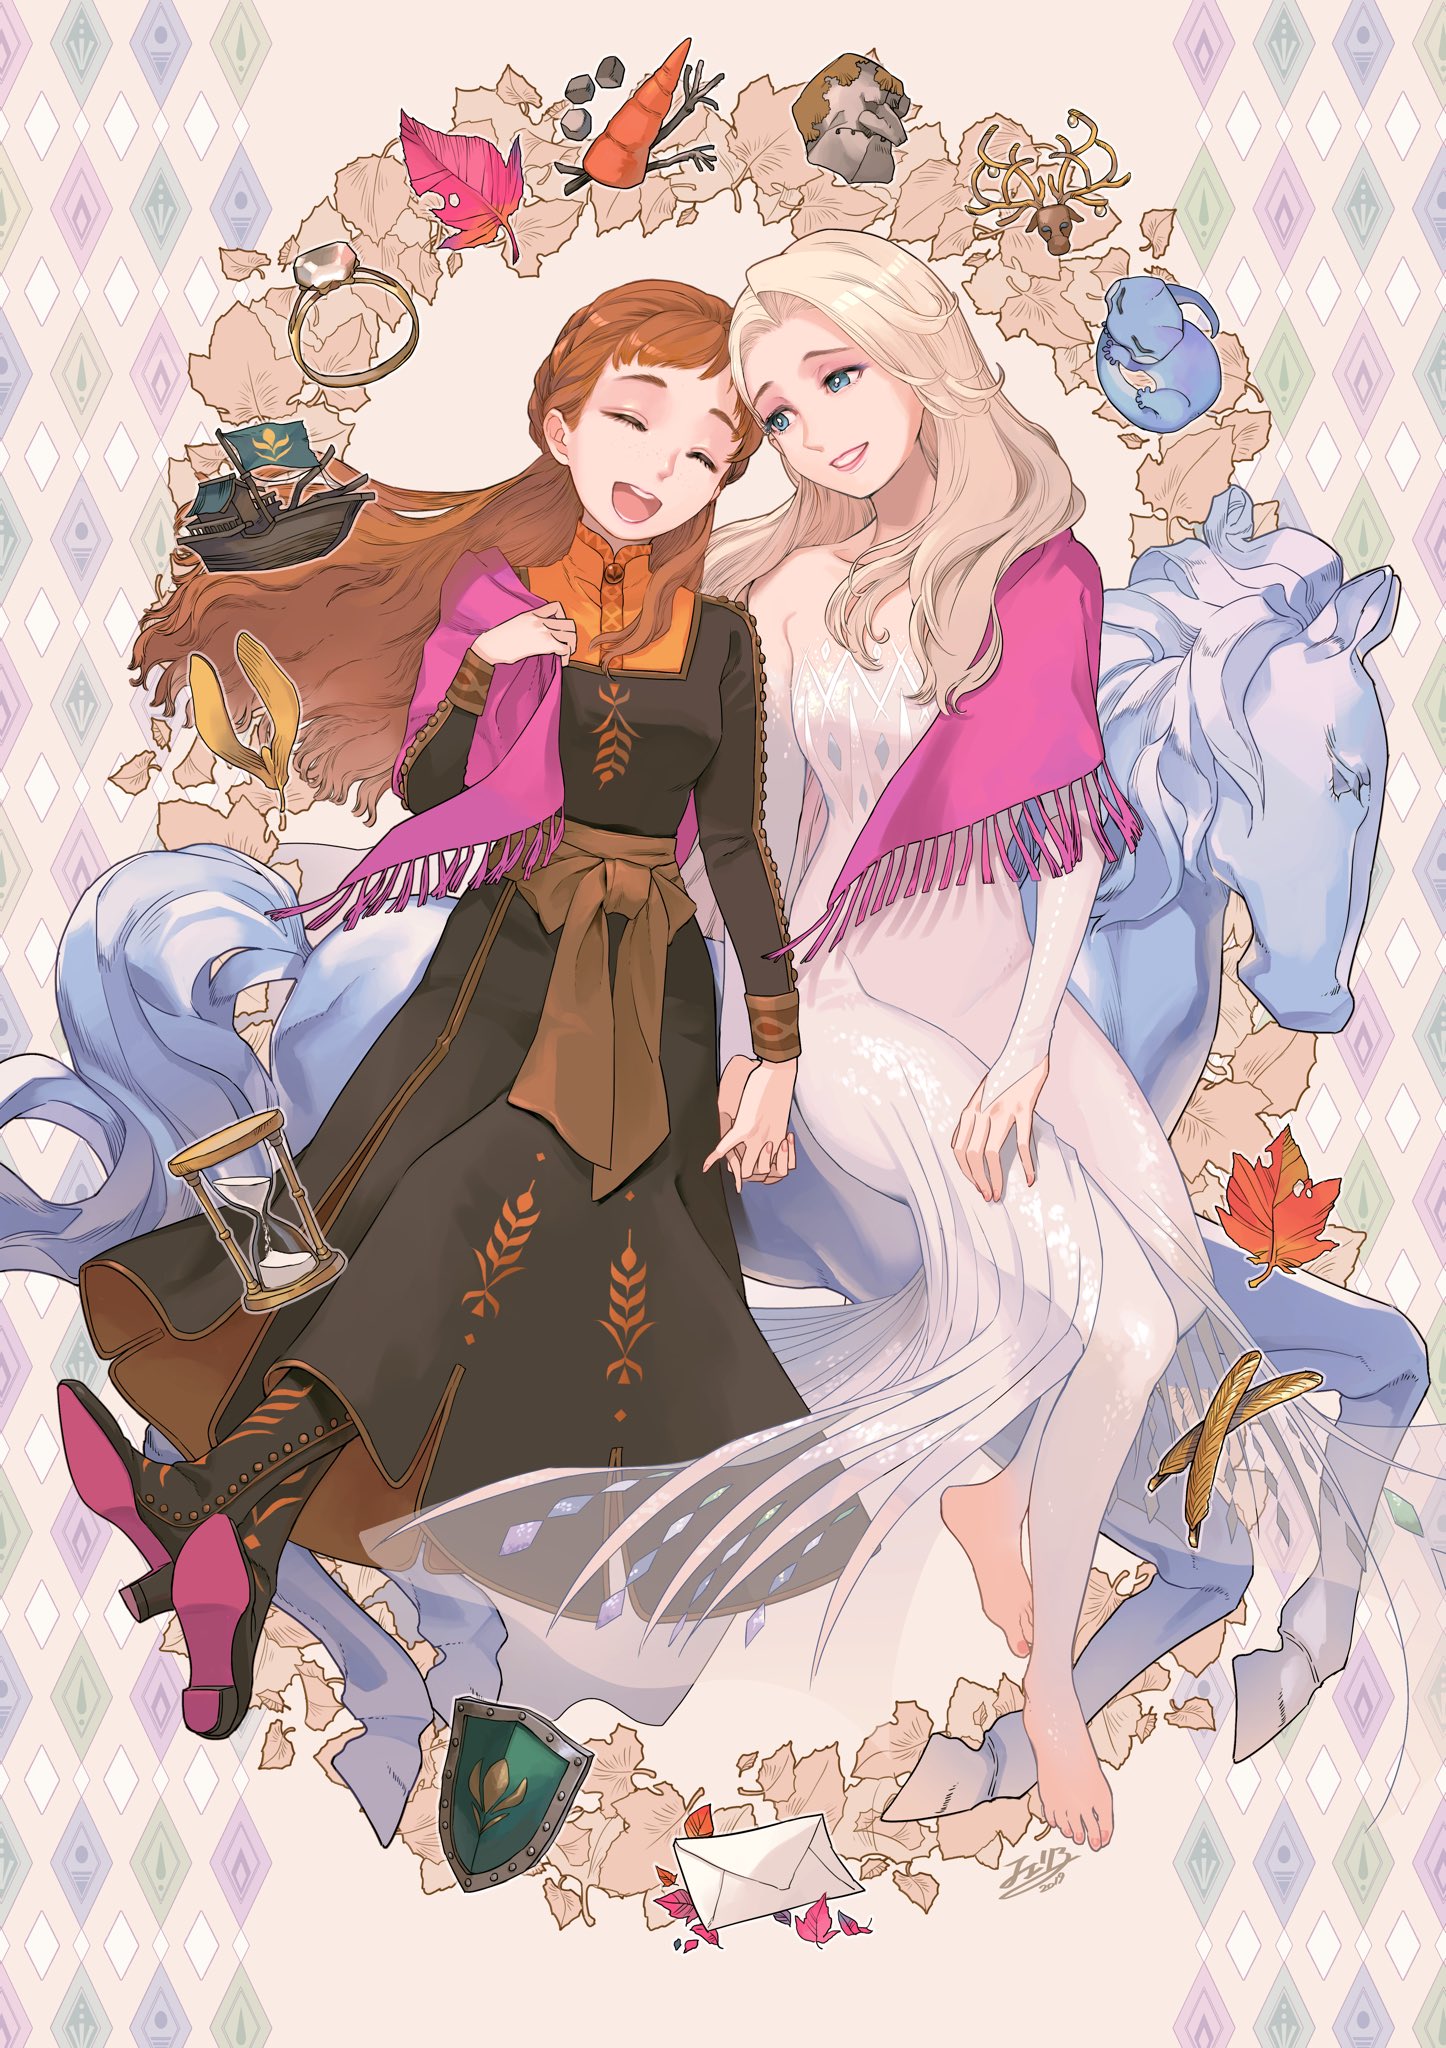 Illustration アナと雪の女王2展 の記録 Twitter